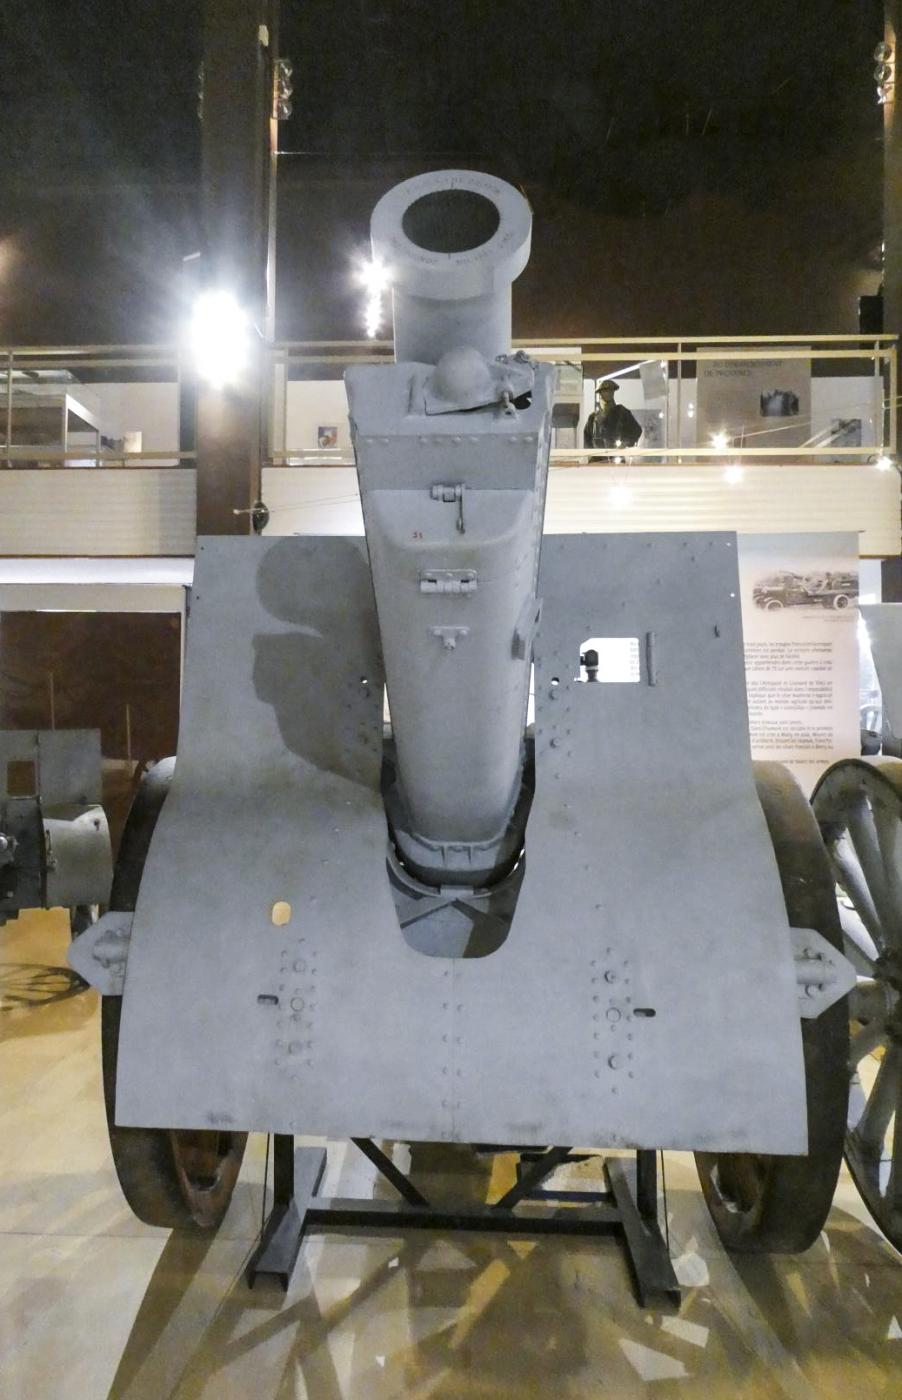 Ligne Maginot - Canon de 155 mm C Modèle 1917 Schneider - Obusier de 155 mm C Modèle 1917 Schneider
Musée de l'artillerie de Draguignan